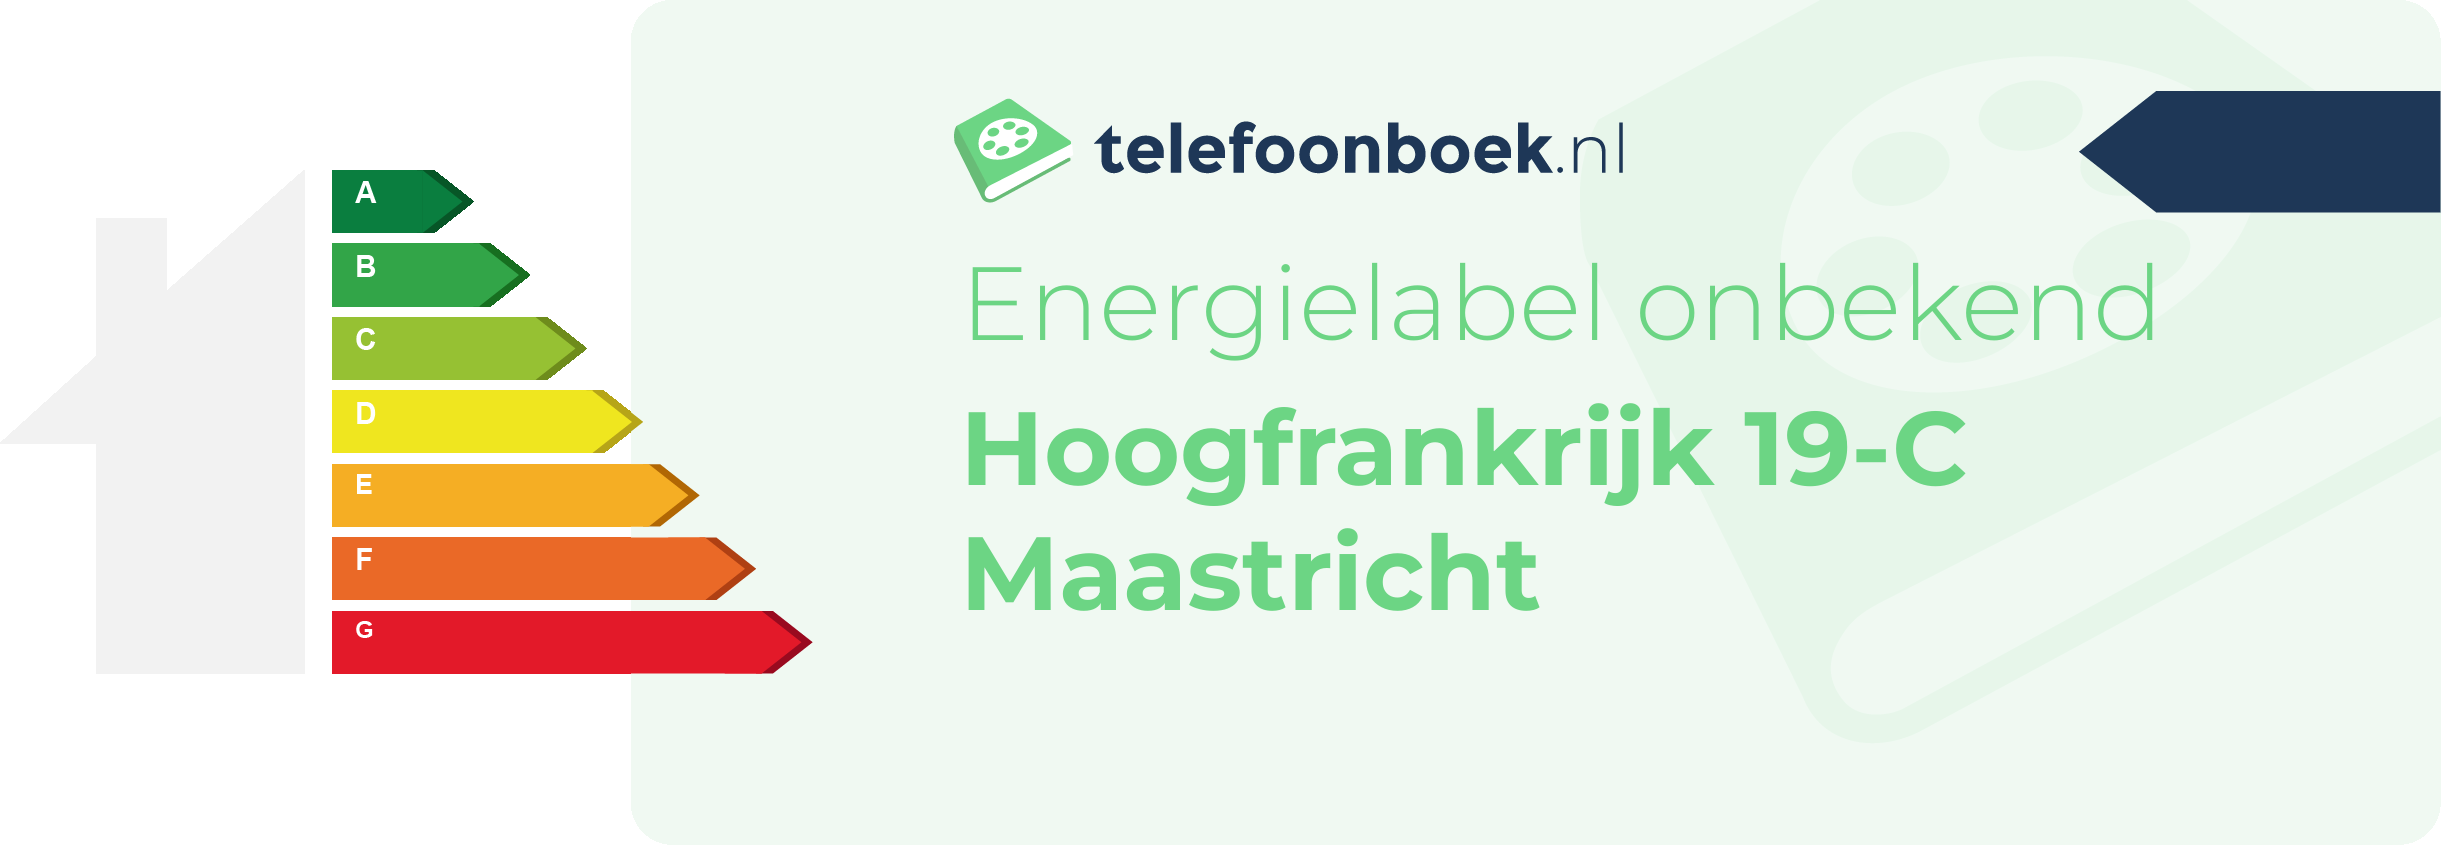 Energielabel Hoogfrankrijk 19-C Maastricht